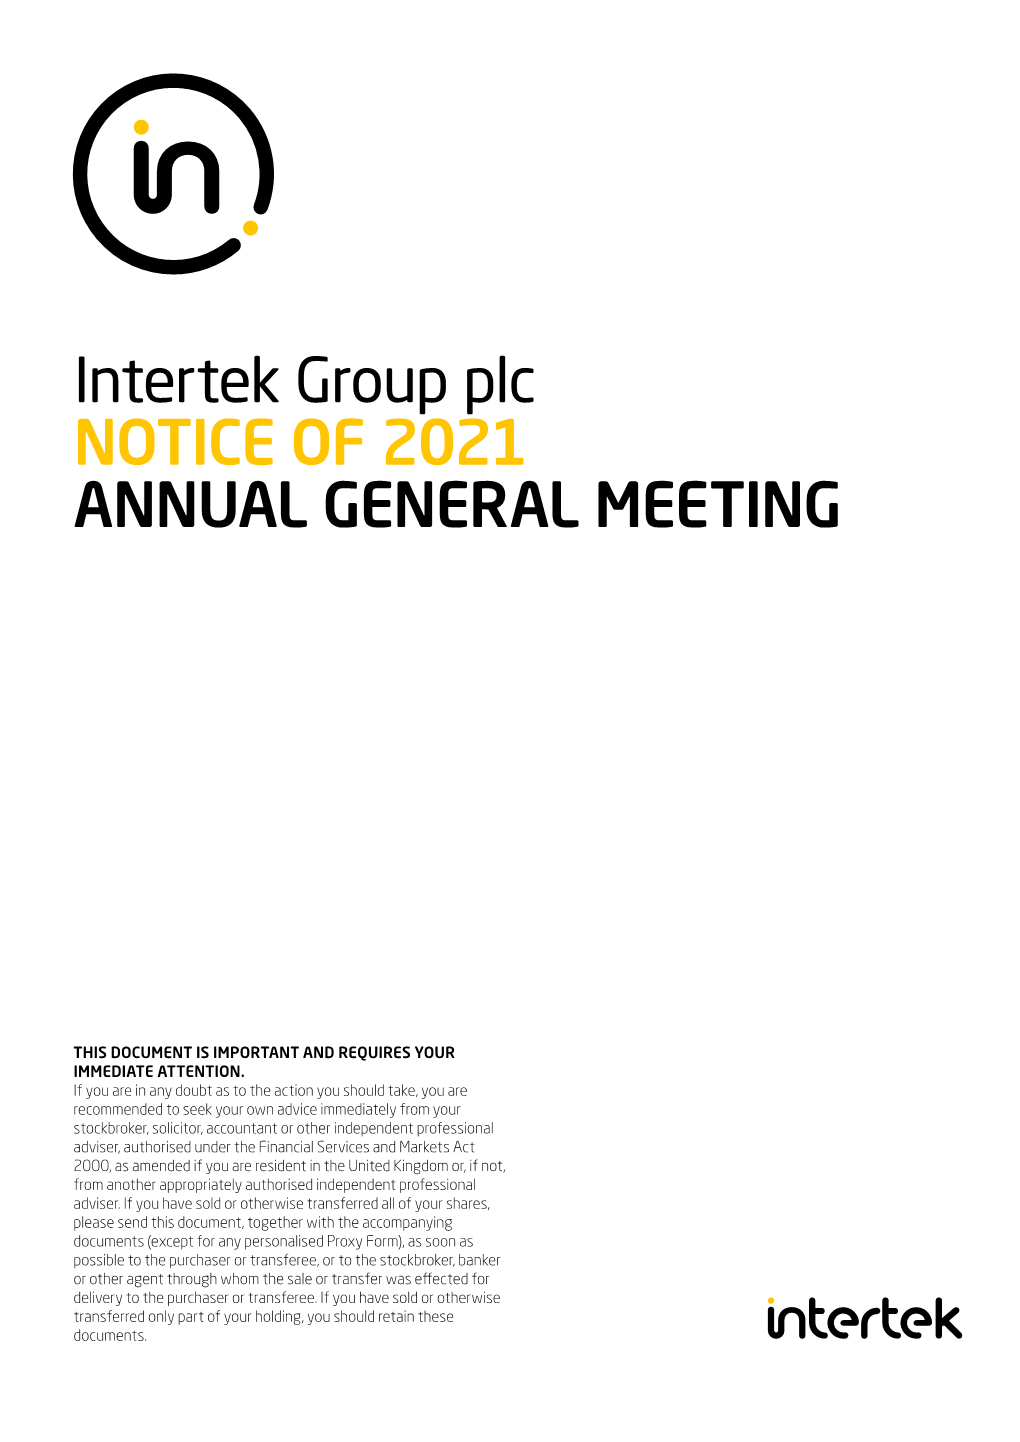 Intertek Group Plc NOTICE of 2021 ANNUAL GENERAL MEETING